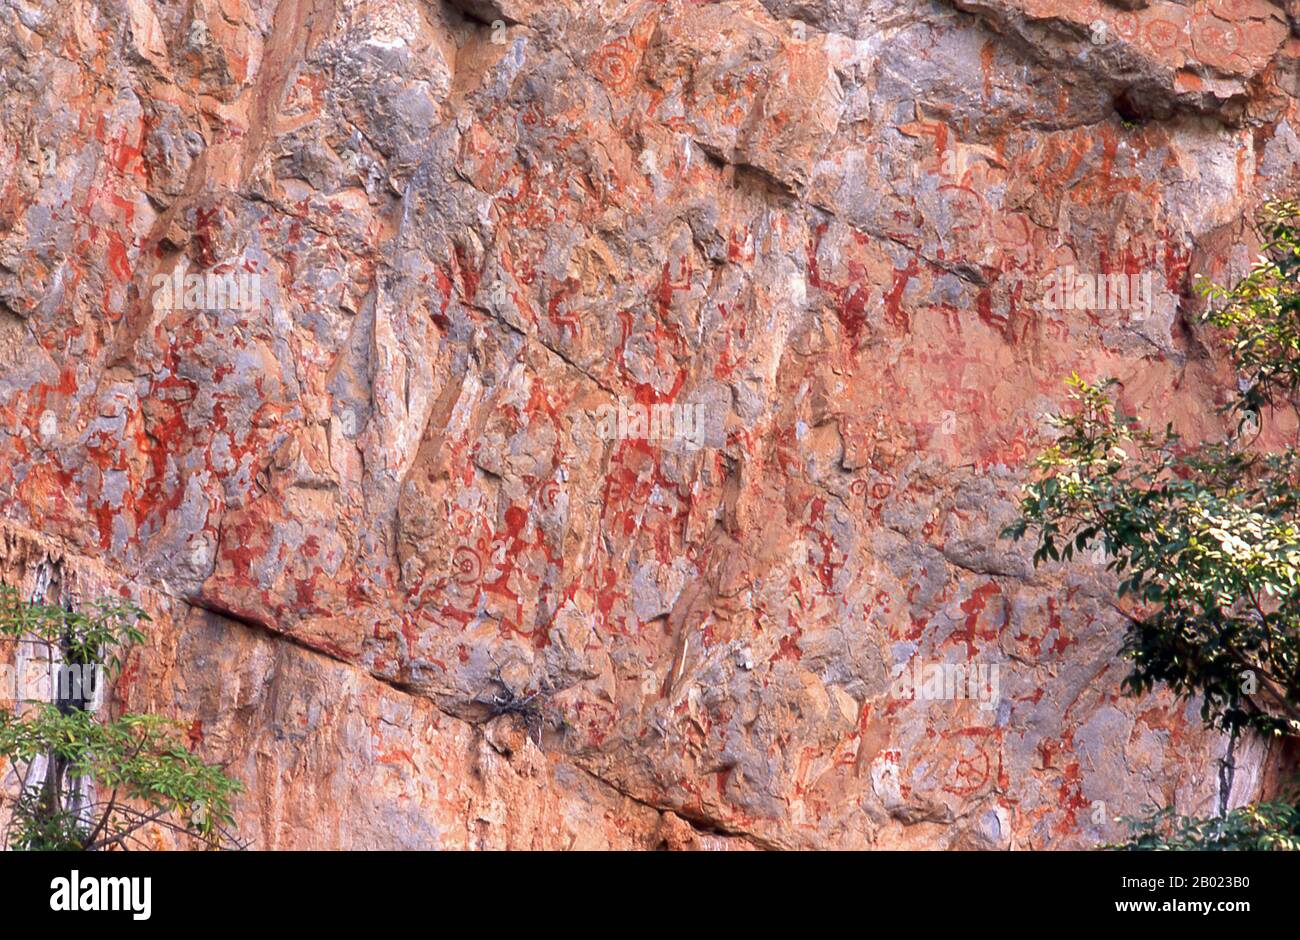 Die Huashan Cliff Paintings befinden sich entlang des Zuo-Flusses in der Provinz Guangxi und werden etwa 2000 Jahre alt. Insgesamt gibt es 60 Gemälde mit insgesamt 1.770 menschlichen Figuren. Die Gemälde wurden von den Menschen in Luoyue, Vorfahren der örtlichen Zhuang-Minderheit, ausgeführt. Der Fluss Zuojiang oder Zuo (Chinesisch: 左江; Pinyin: ZuǒJiāng; wörtlich "Linker Fluss") ist ein Fluss in der Provinz Guangxi im Süden Chinas. Er fließt in das Südchinesische Meer. Stockfoto